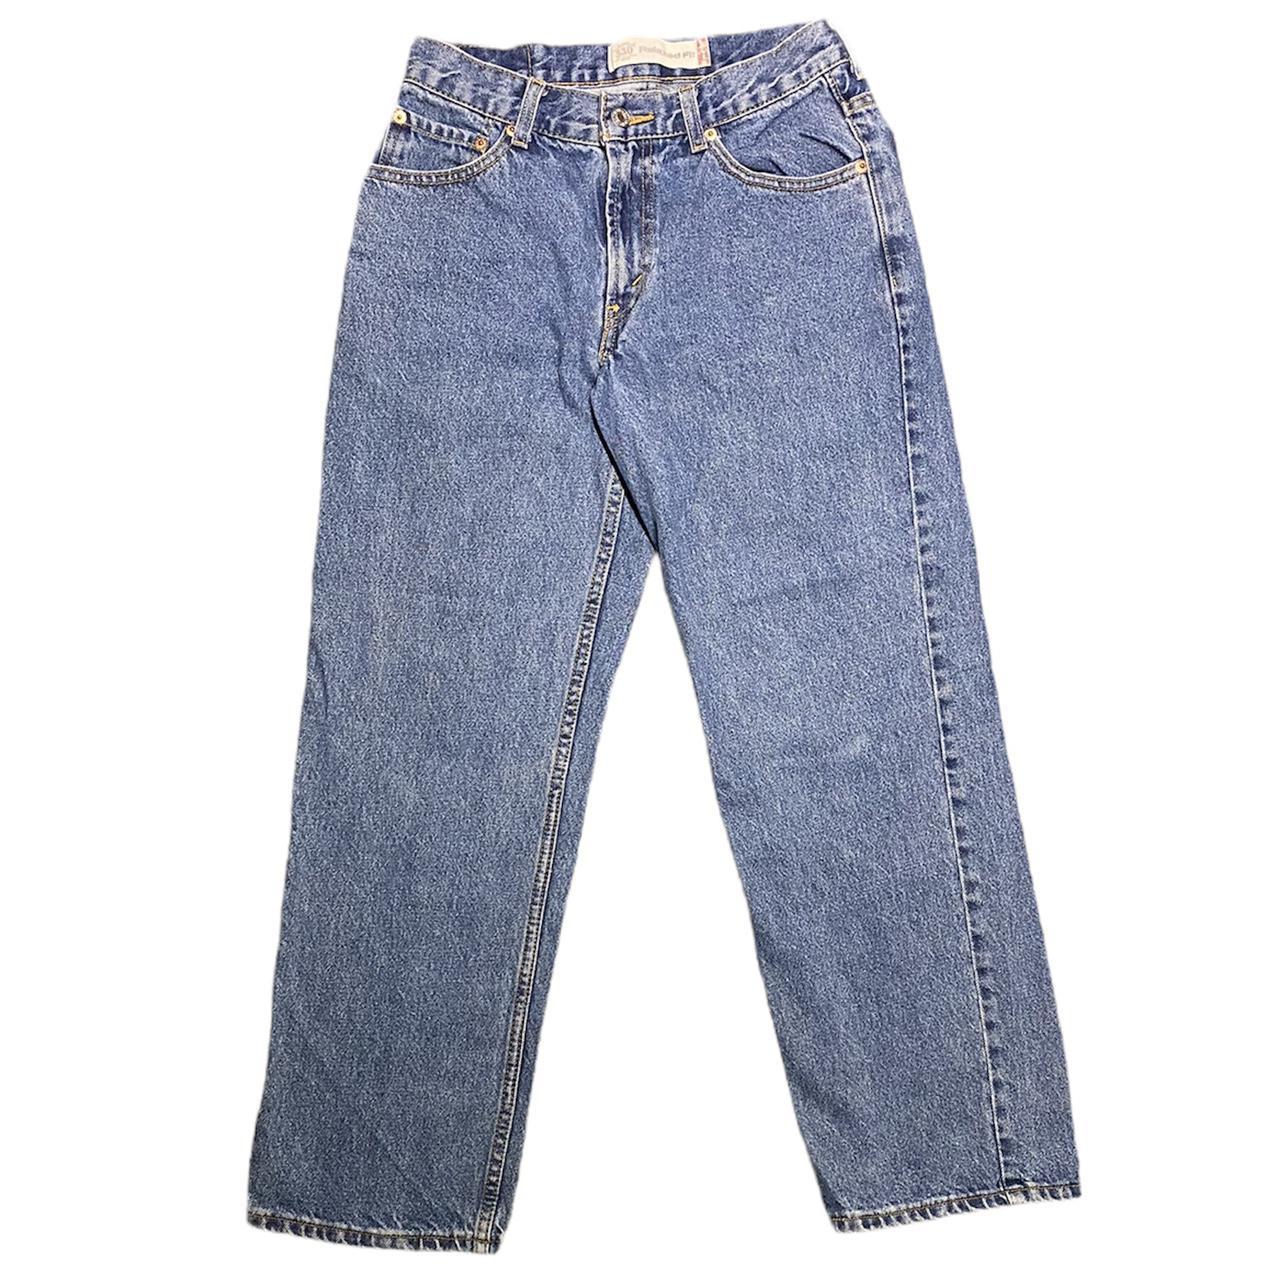 Product Image 2 - VINTAGE Blue Levi’s 550 Jeans